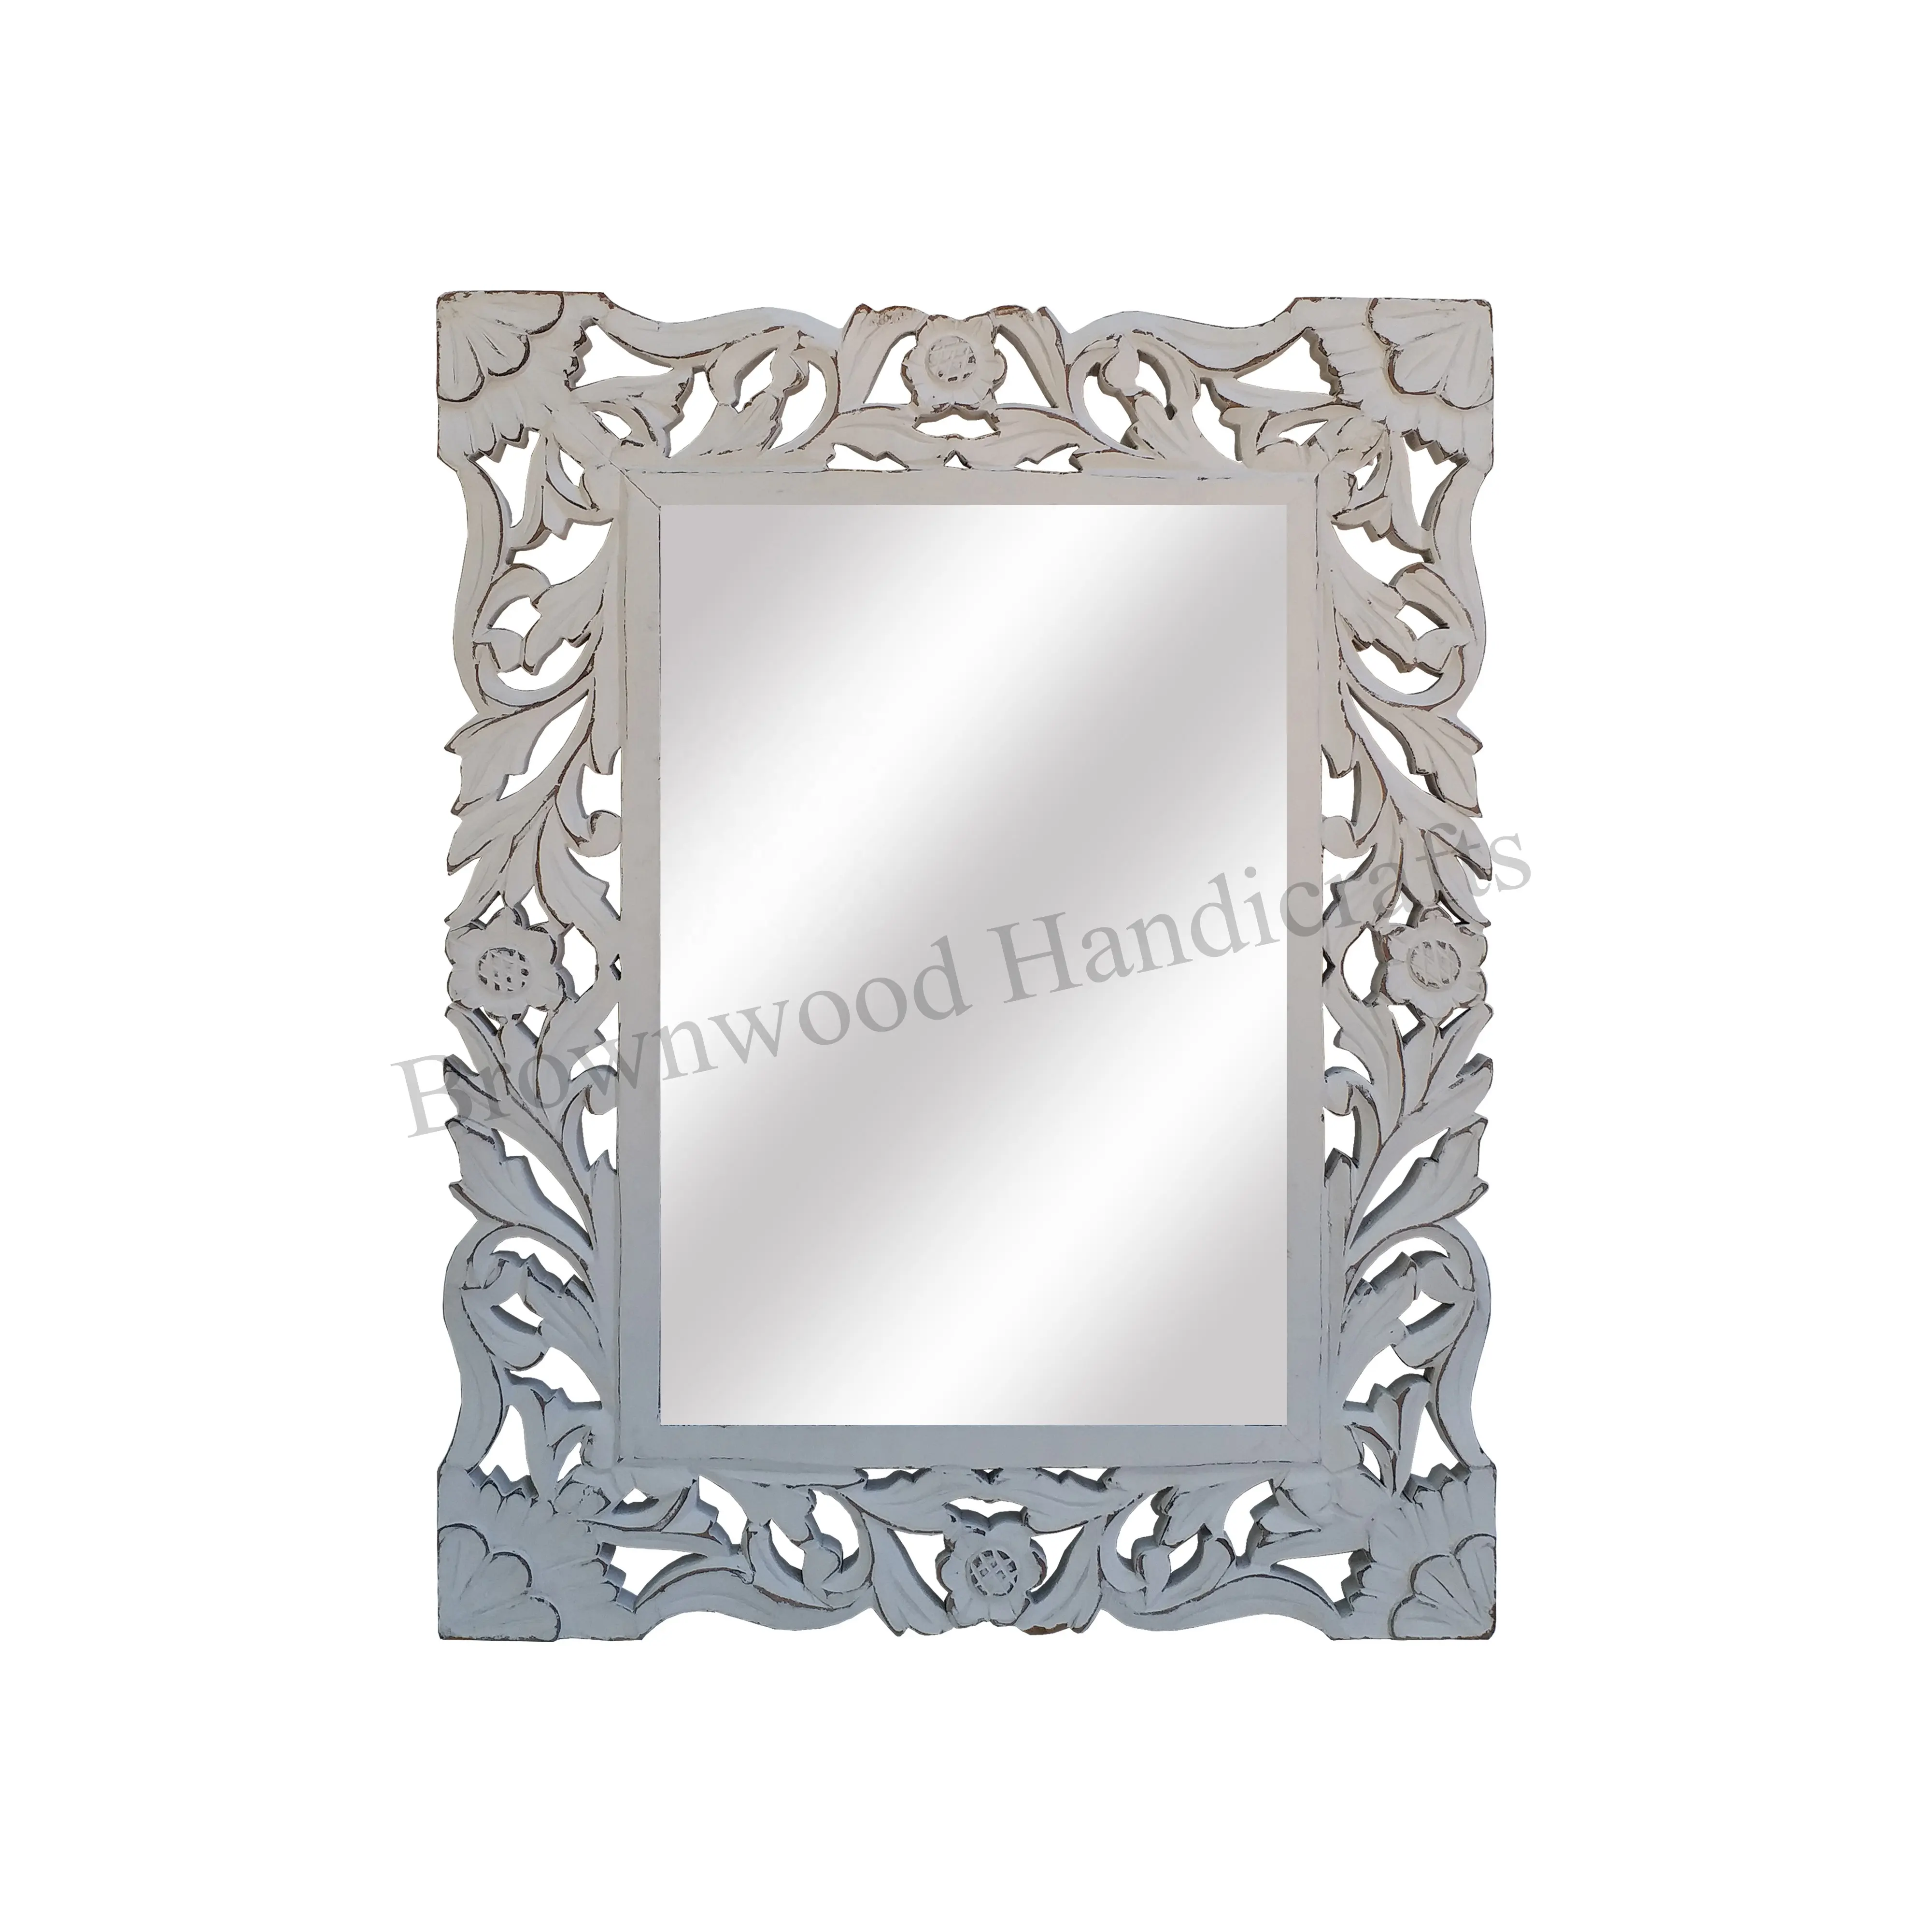 Marco de espejo de madera MDF rectangular de diseño antiguo de tendencia superior para decoración de pared marcos de espejo de tocador de madera tallada Floral